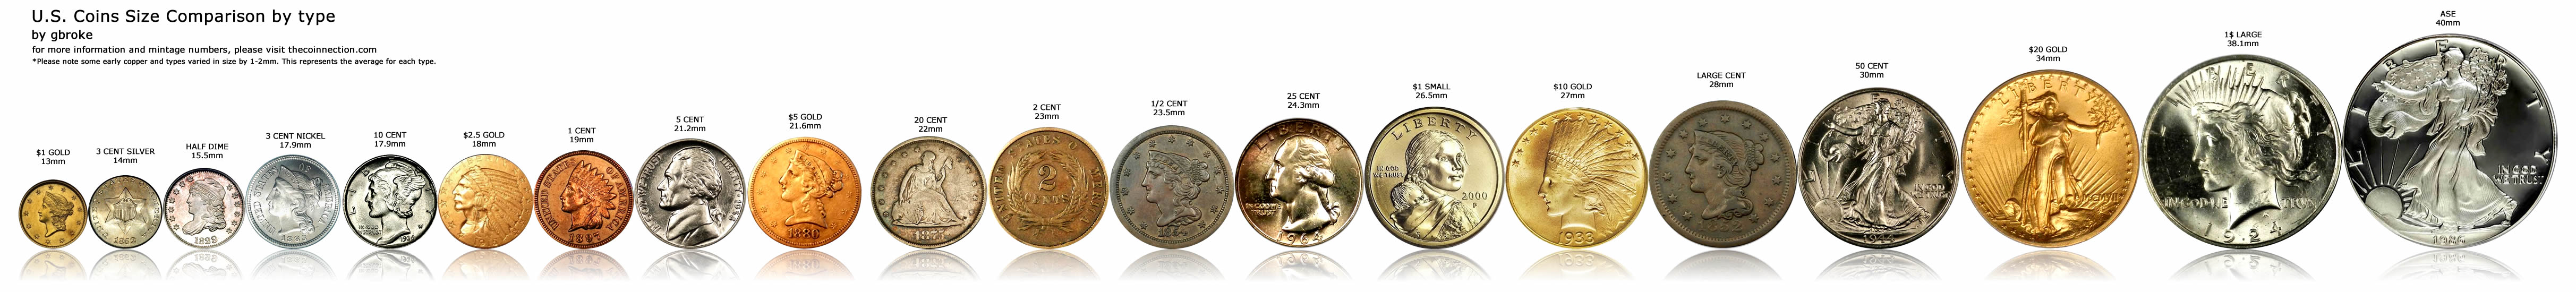 Тон коин цена на сегодня рублях. Диаметр монет. Цент доллара монета. Монета диаметром 1.5 см. Размер монет США.